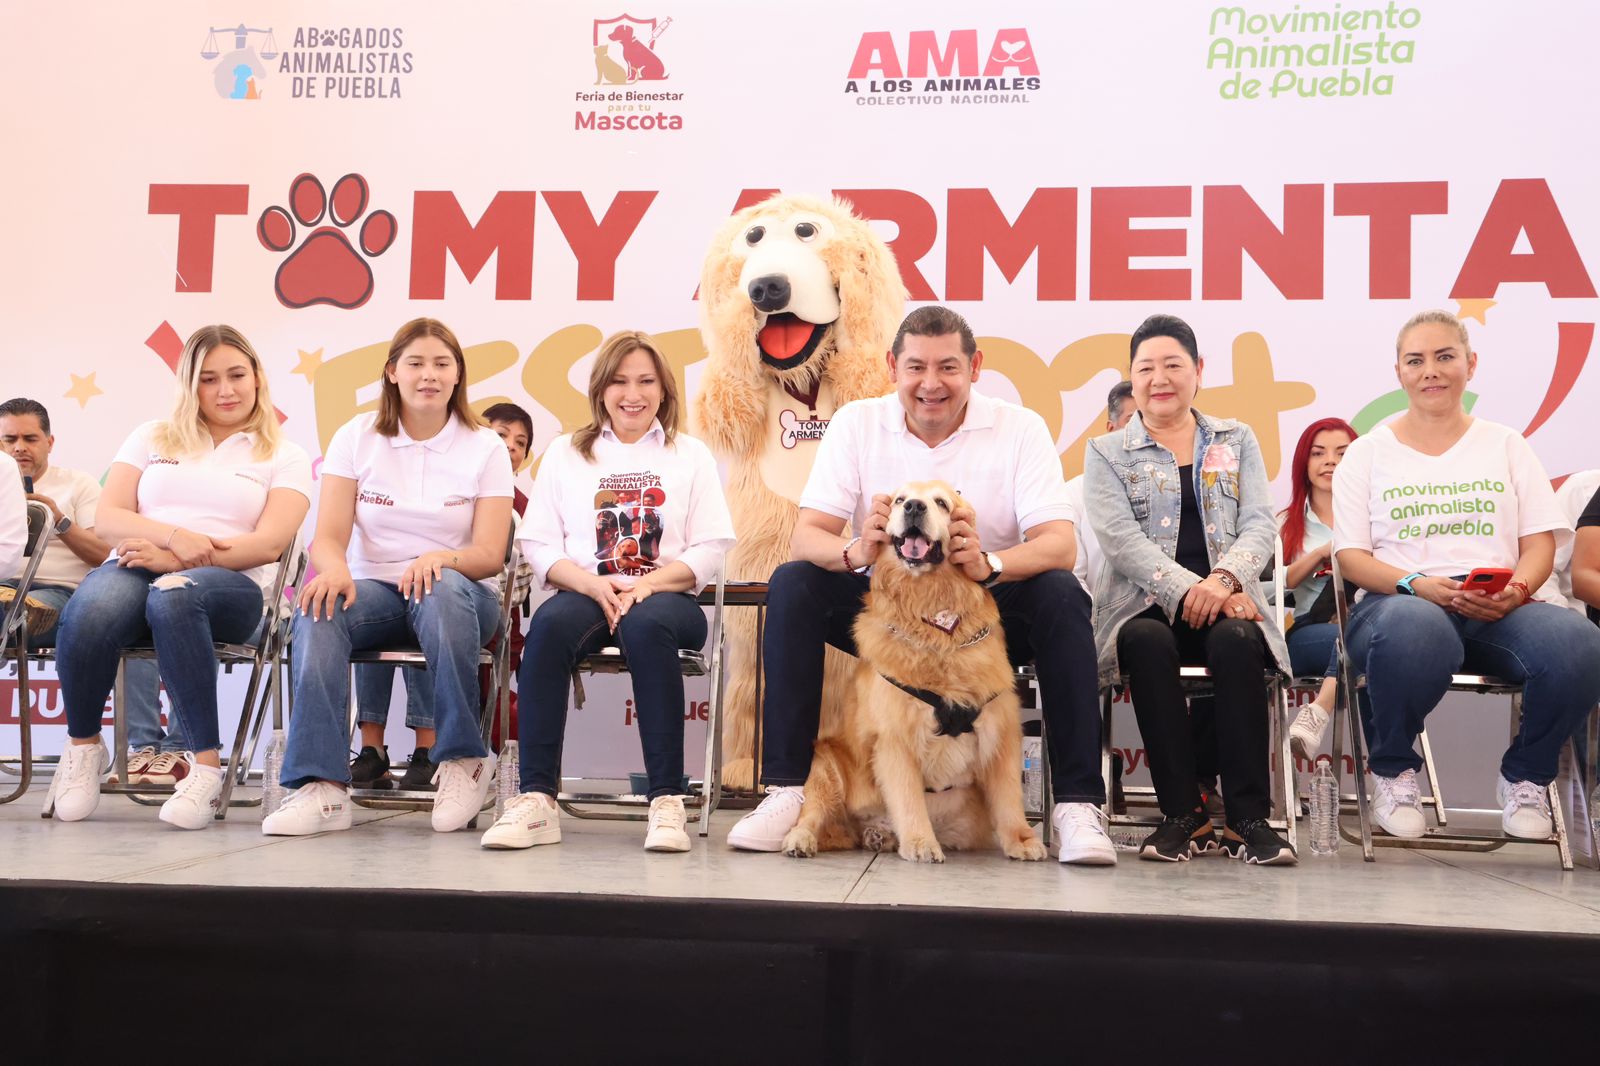 Alejandro Armenta se compromete a incluir en los programas el bienestar de los animales